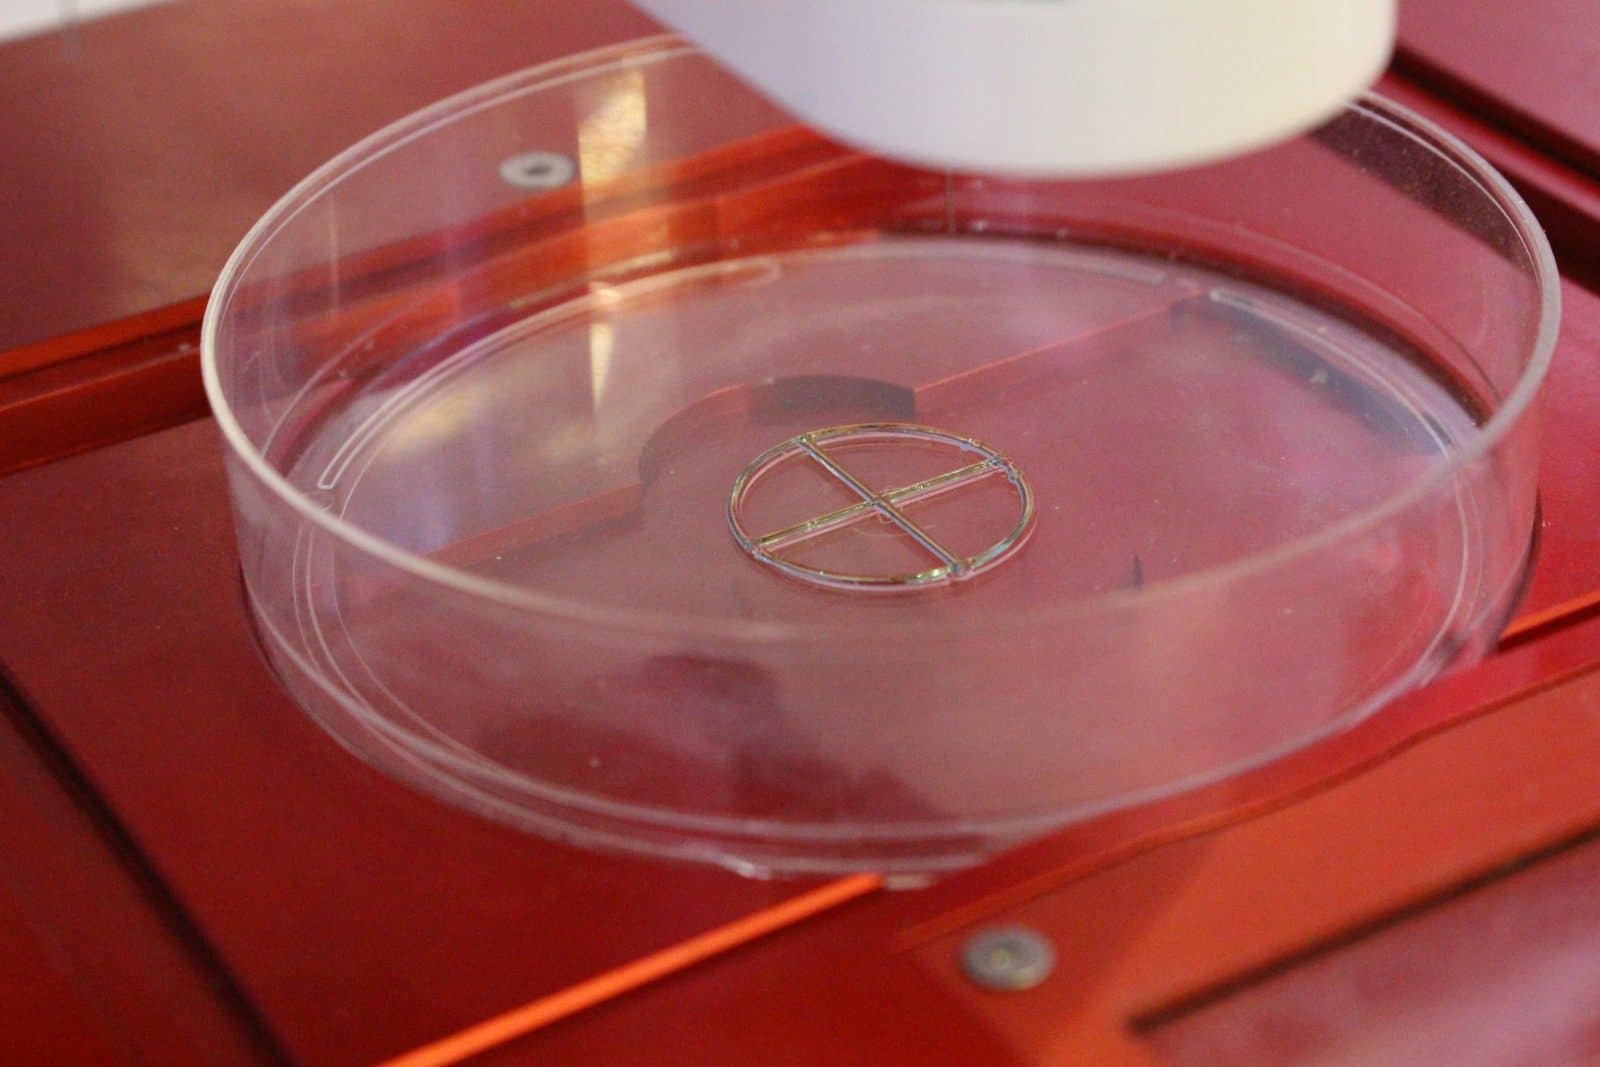 quickstart guide: allevi 3 - test bioprint